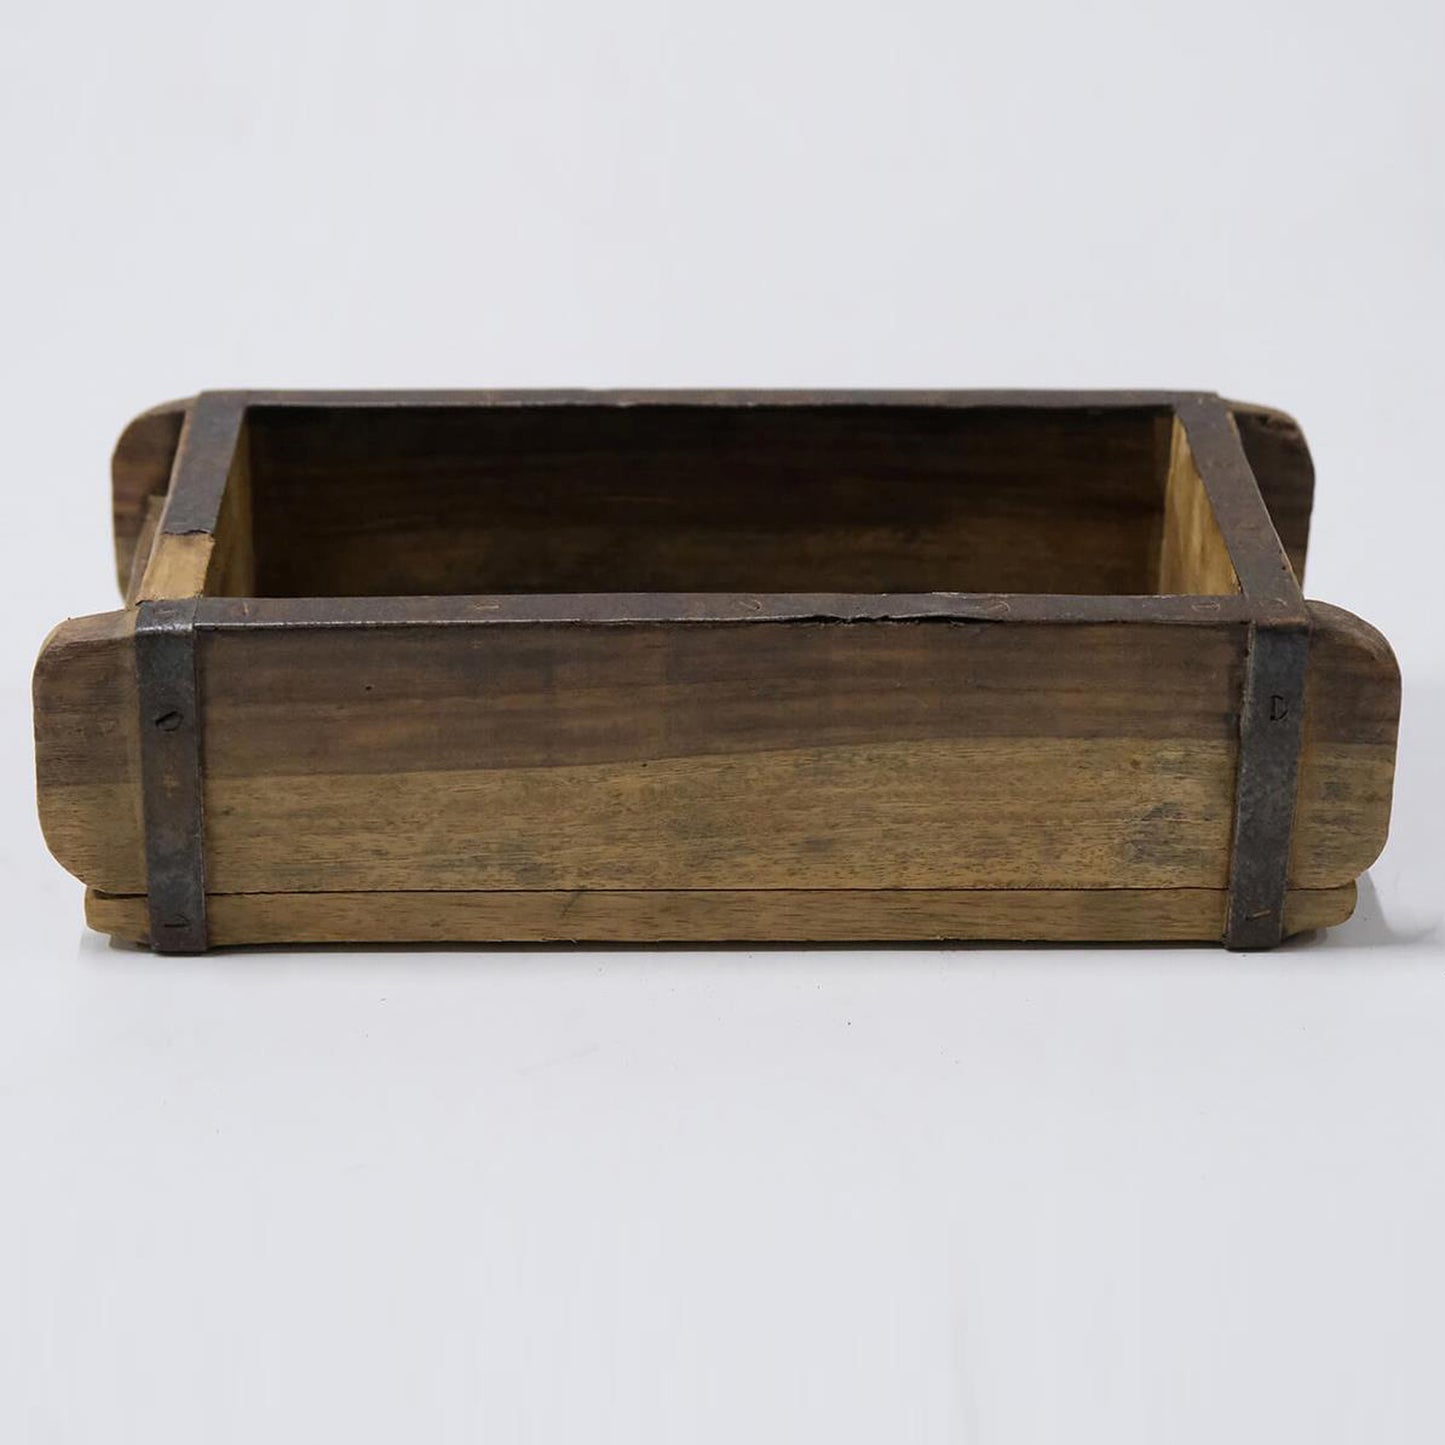 Holzschatulle, Holzkiste "Alte Ziegelform" - gewachst 30 cm mit Patina Vintagestyle